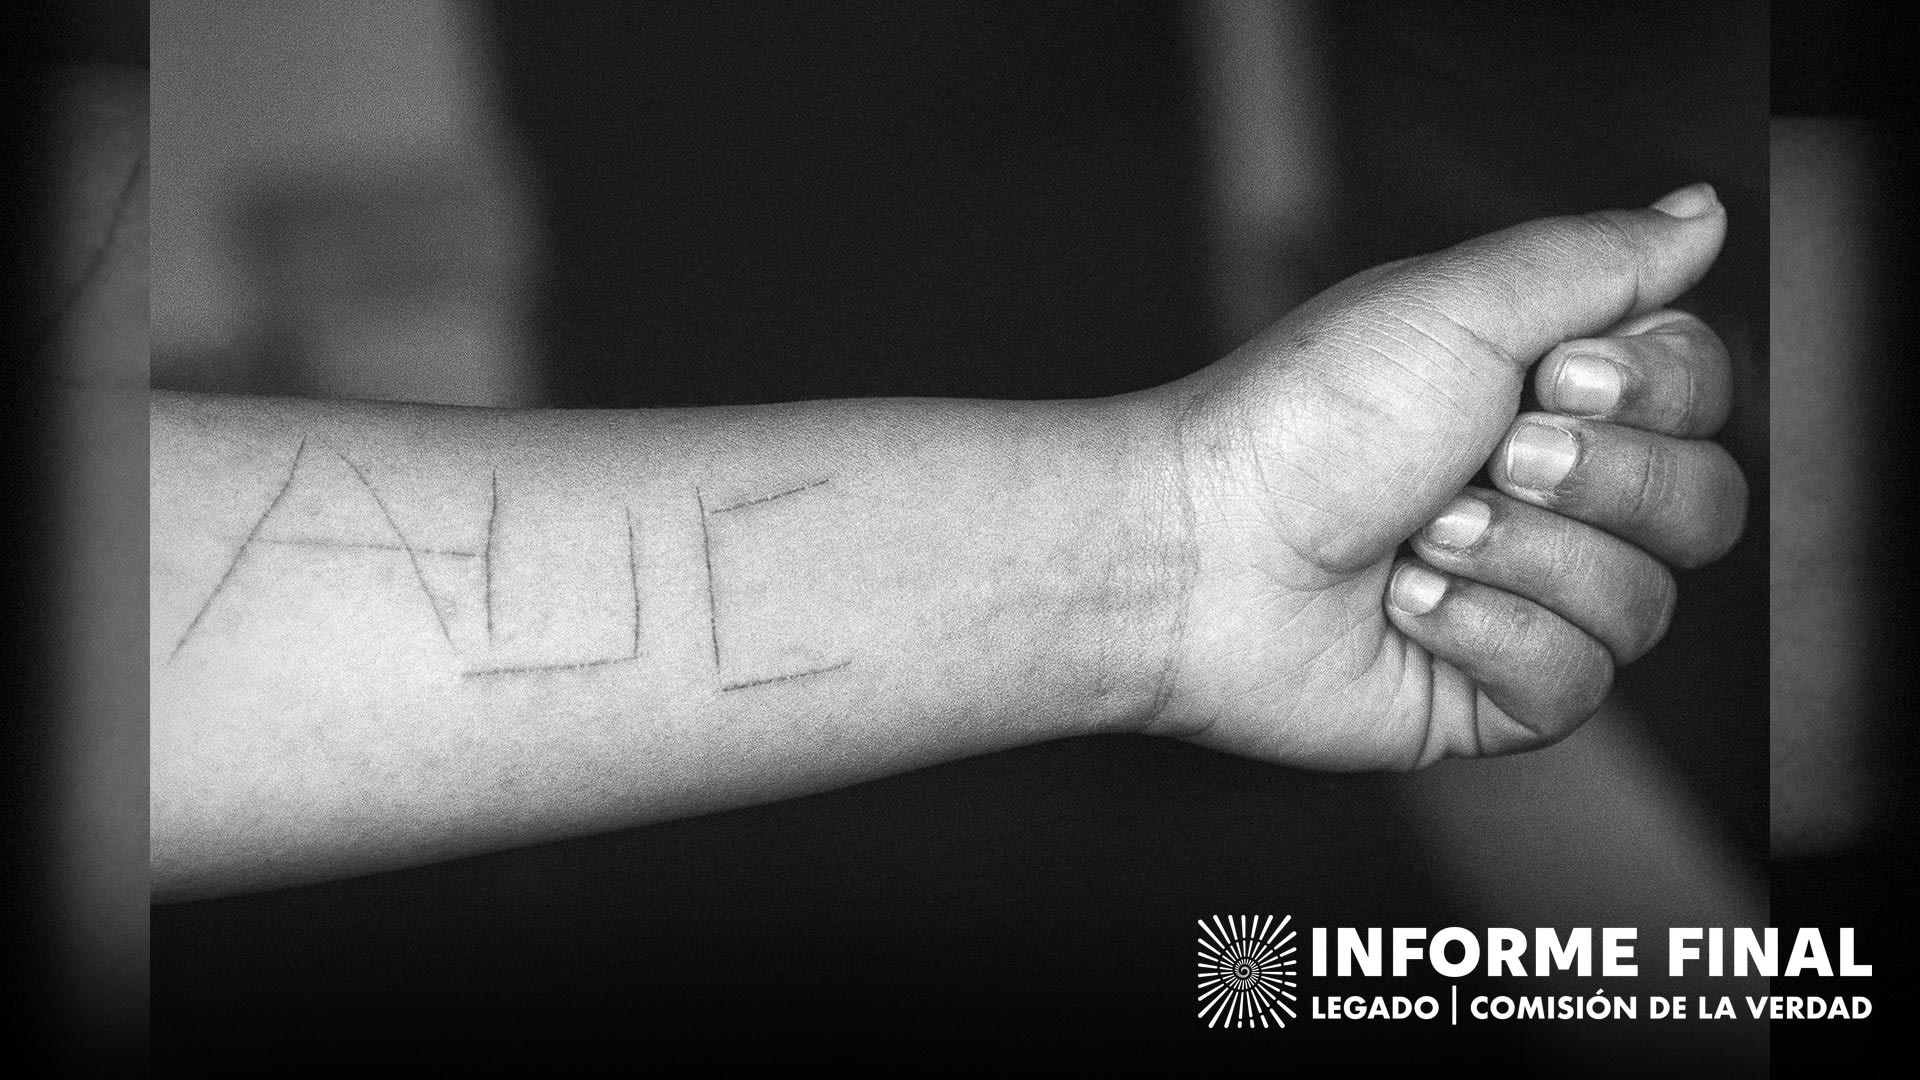 Marcas hechas por paramiltares a una joven durante su secuestro y violación